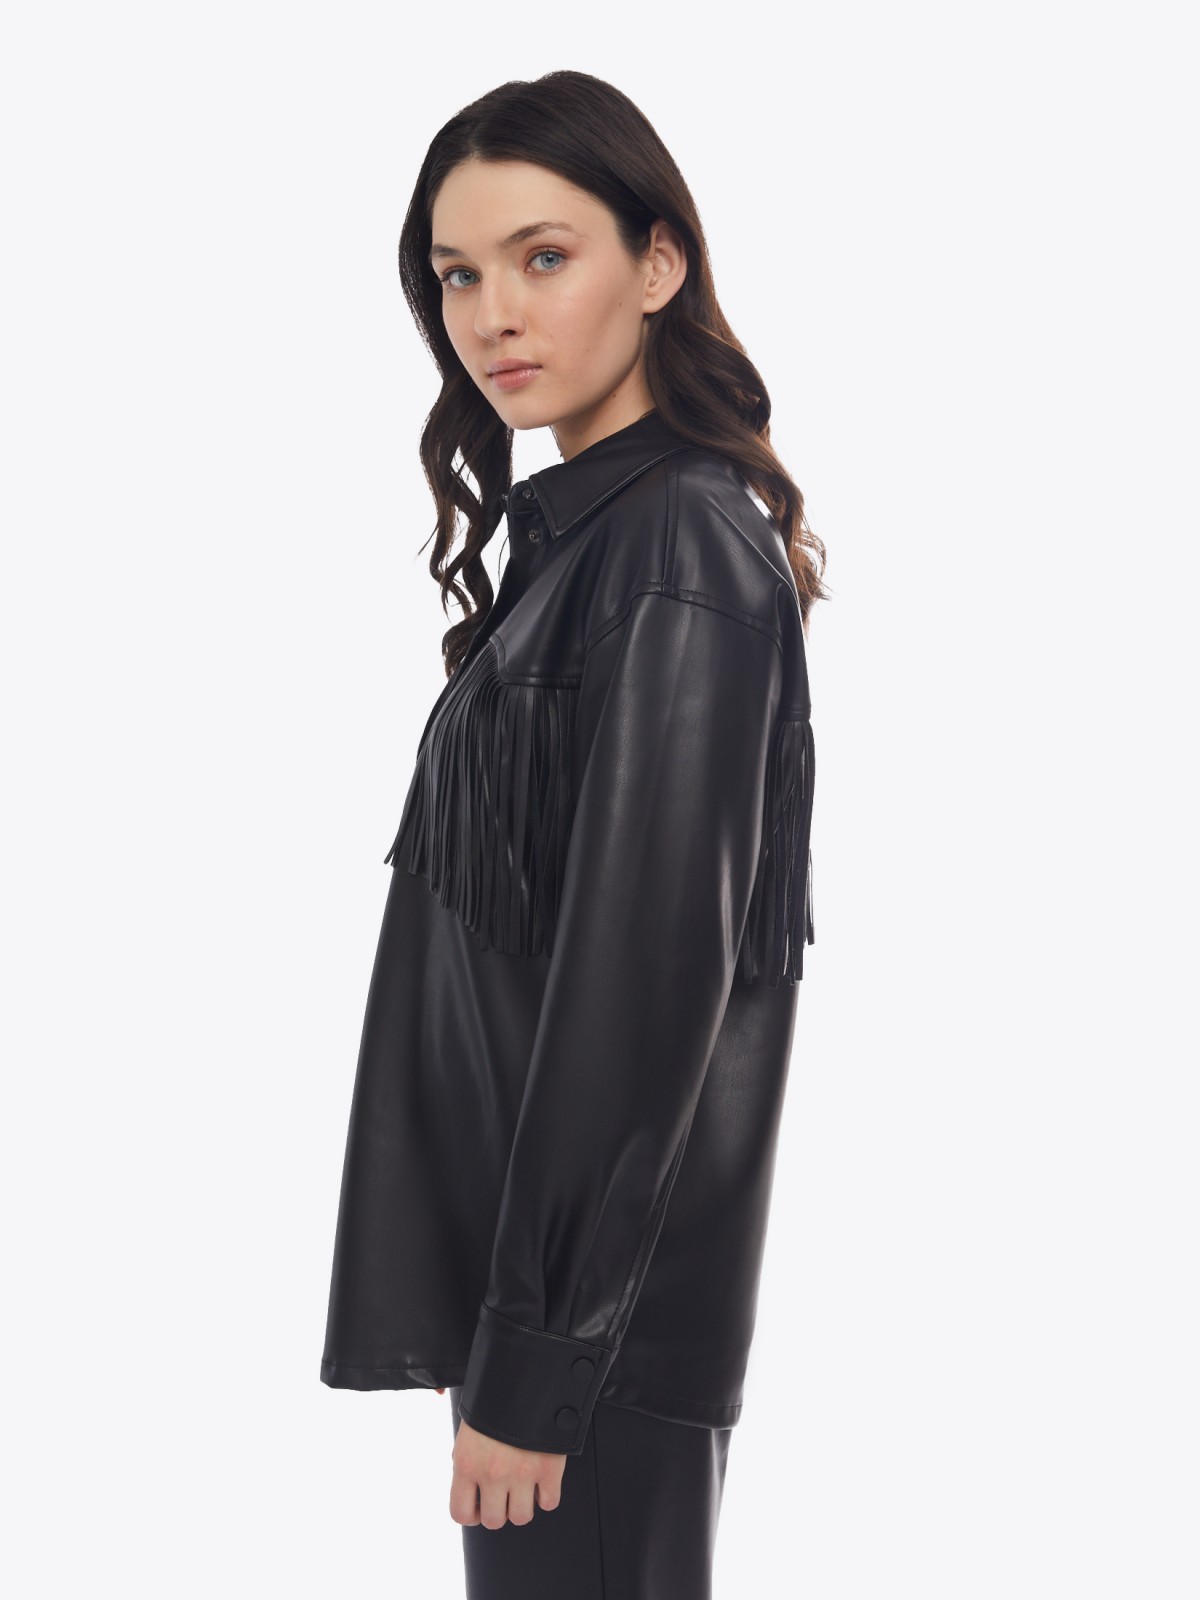 Куртка-рубашка из экокожи с бахромой на кокетке zolla 02413540L051, цвет черный, размер S - фото 5